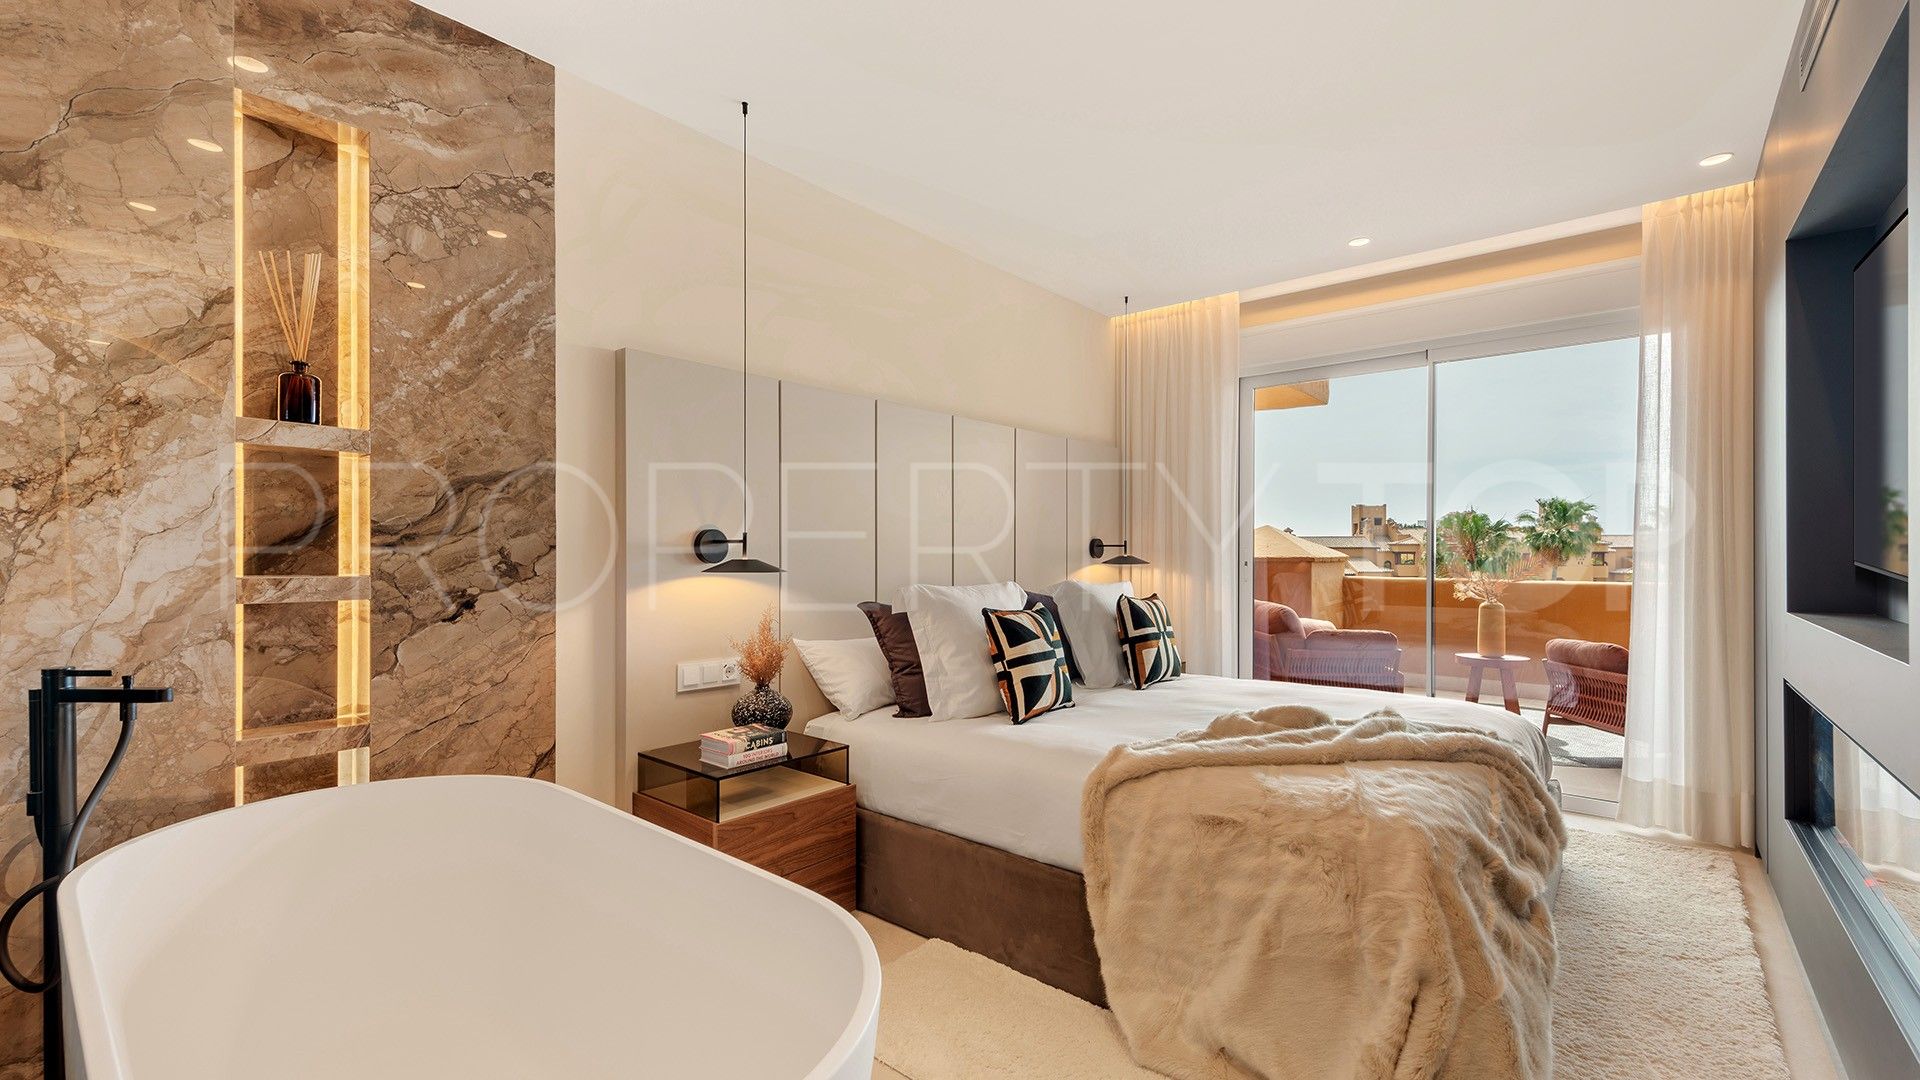 Apartment for sale in Los Granados del Mar with 3 bedrooms